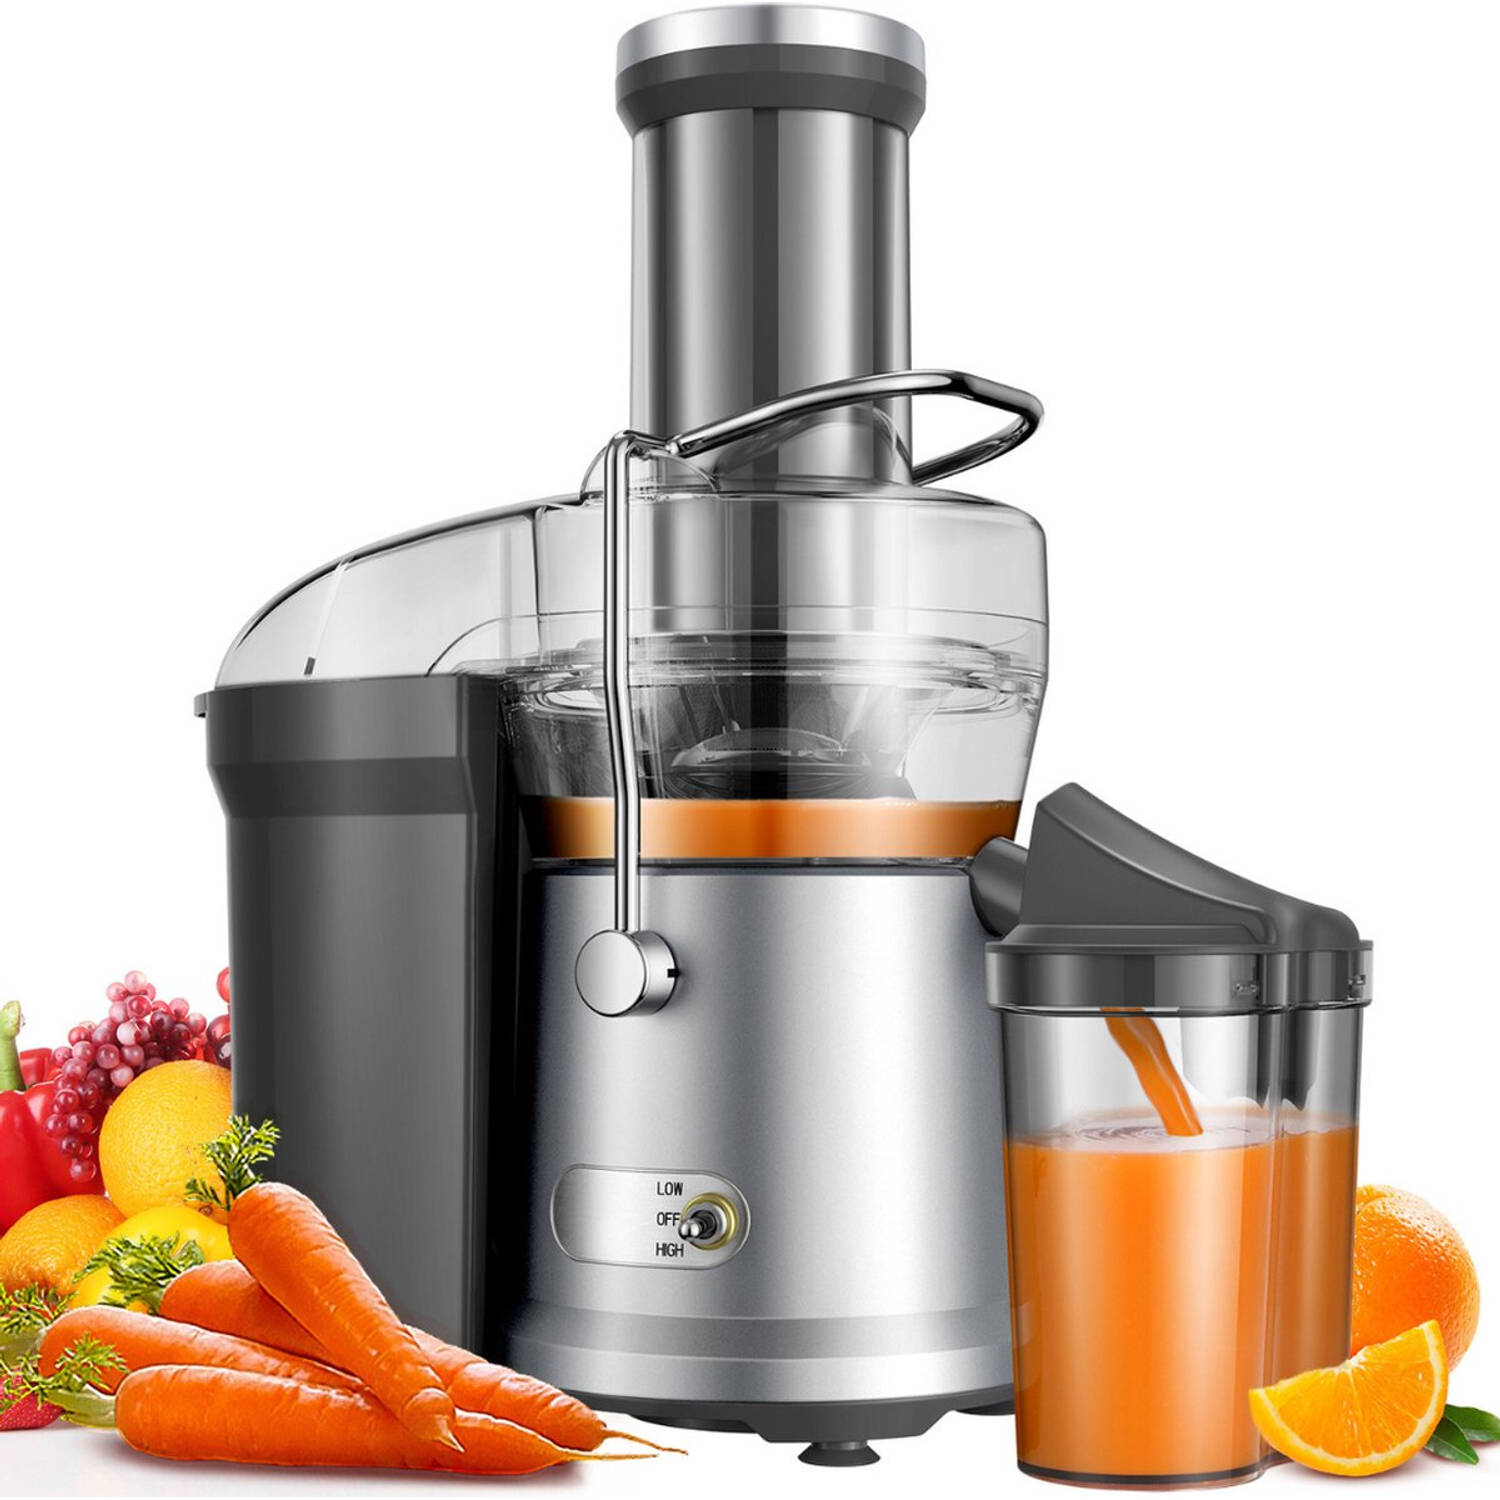 Safecourt Kitchen Sapcentrifuge Juicer voor Groenten & Fruit Grote Vulopening 3 snelheden 1200 Watt